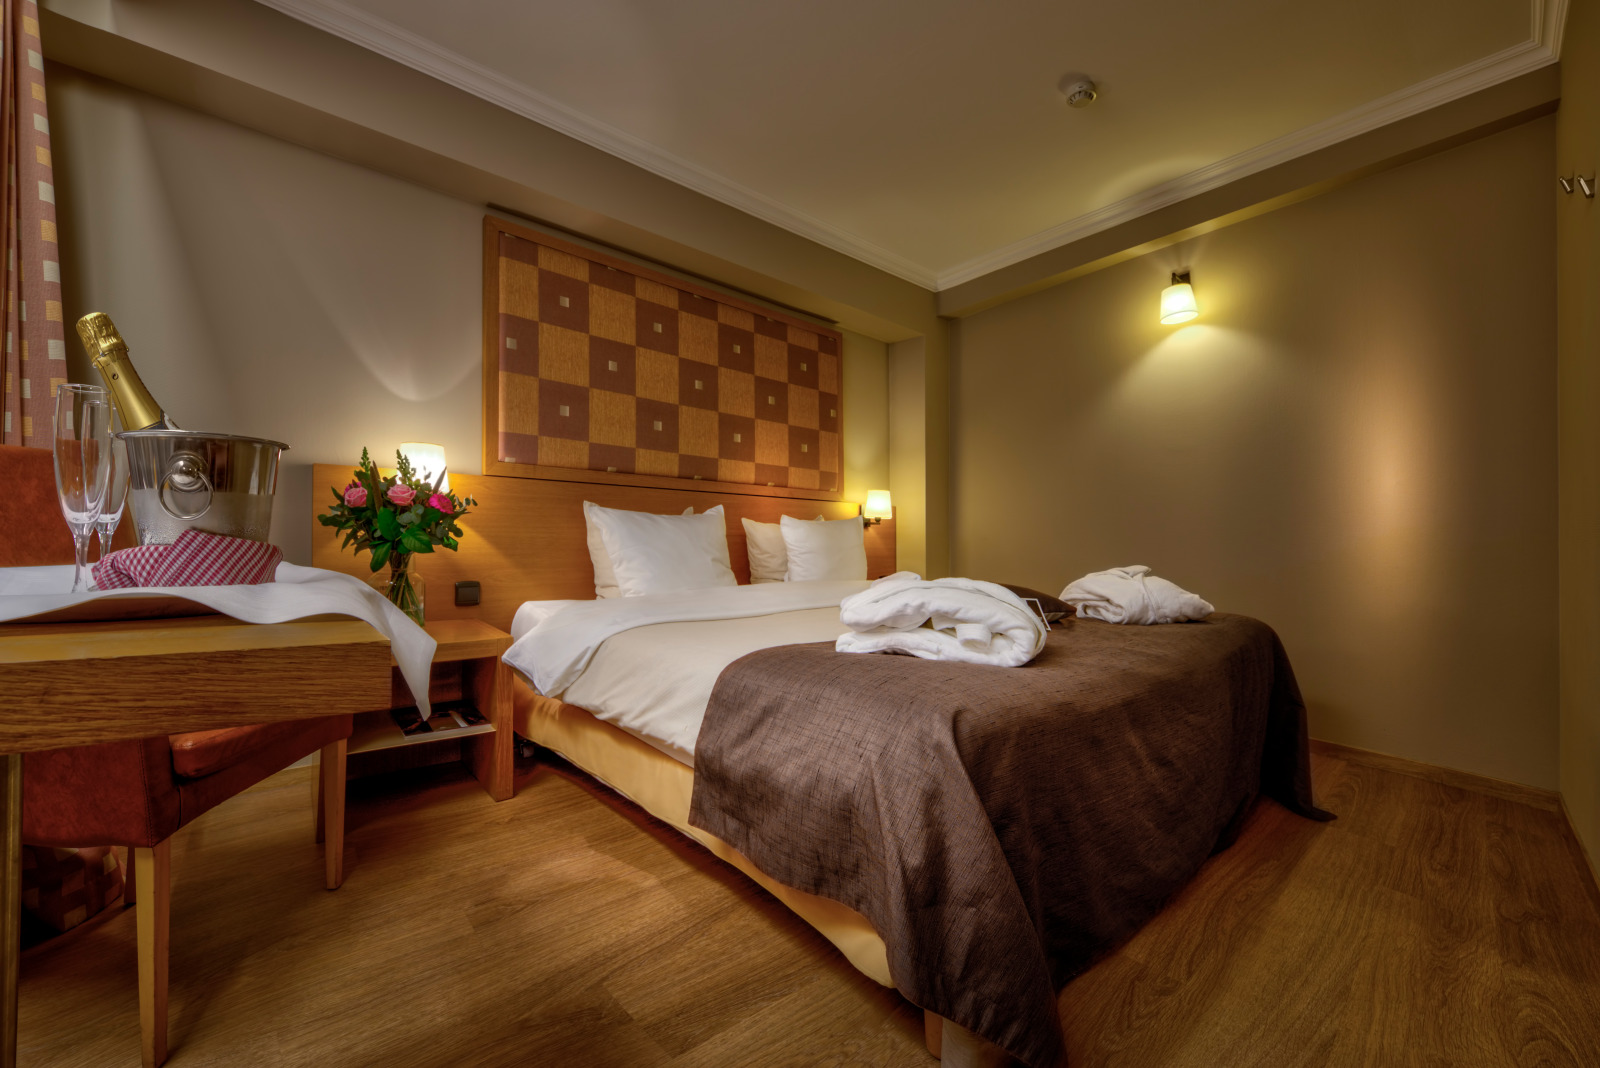 Übernachten in der Wallonie - Zimmer im Hotel Quartier-Latin in Marche-en-Famenne